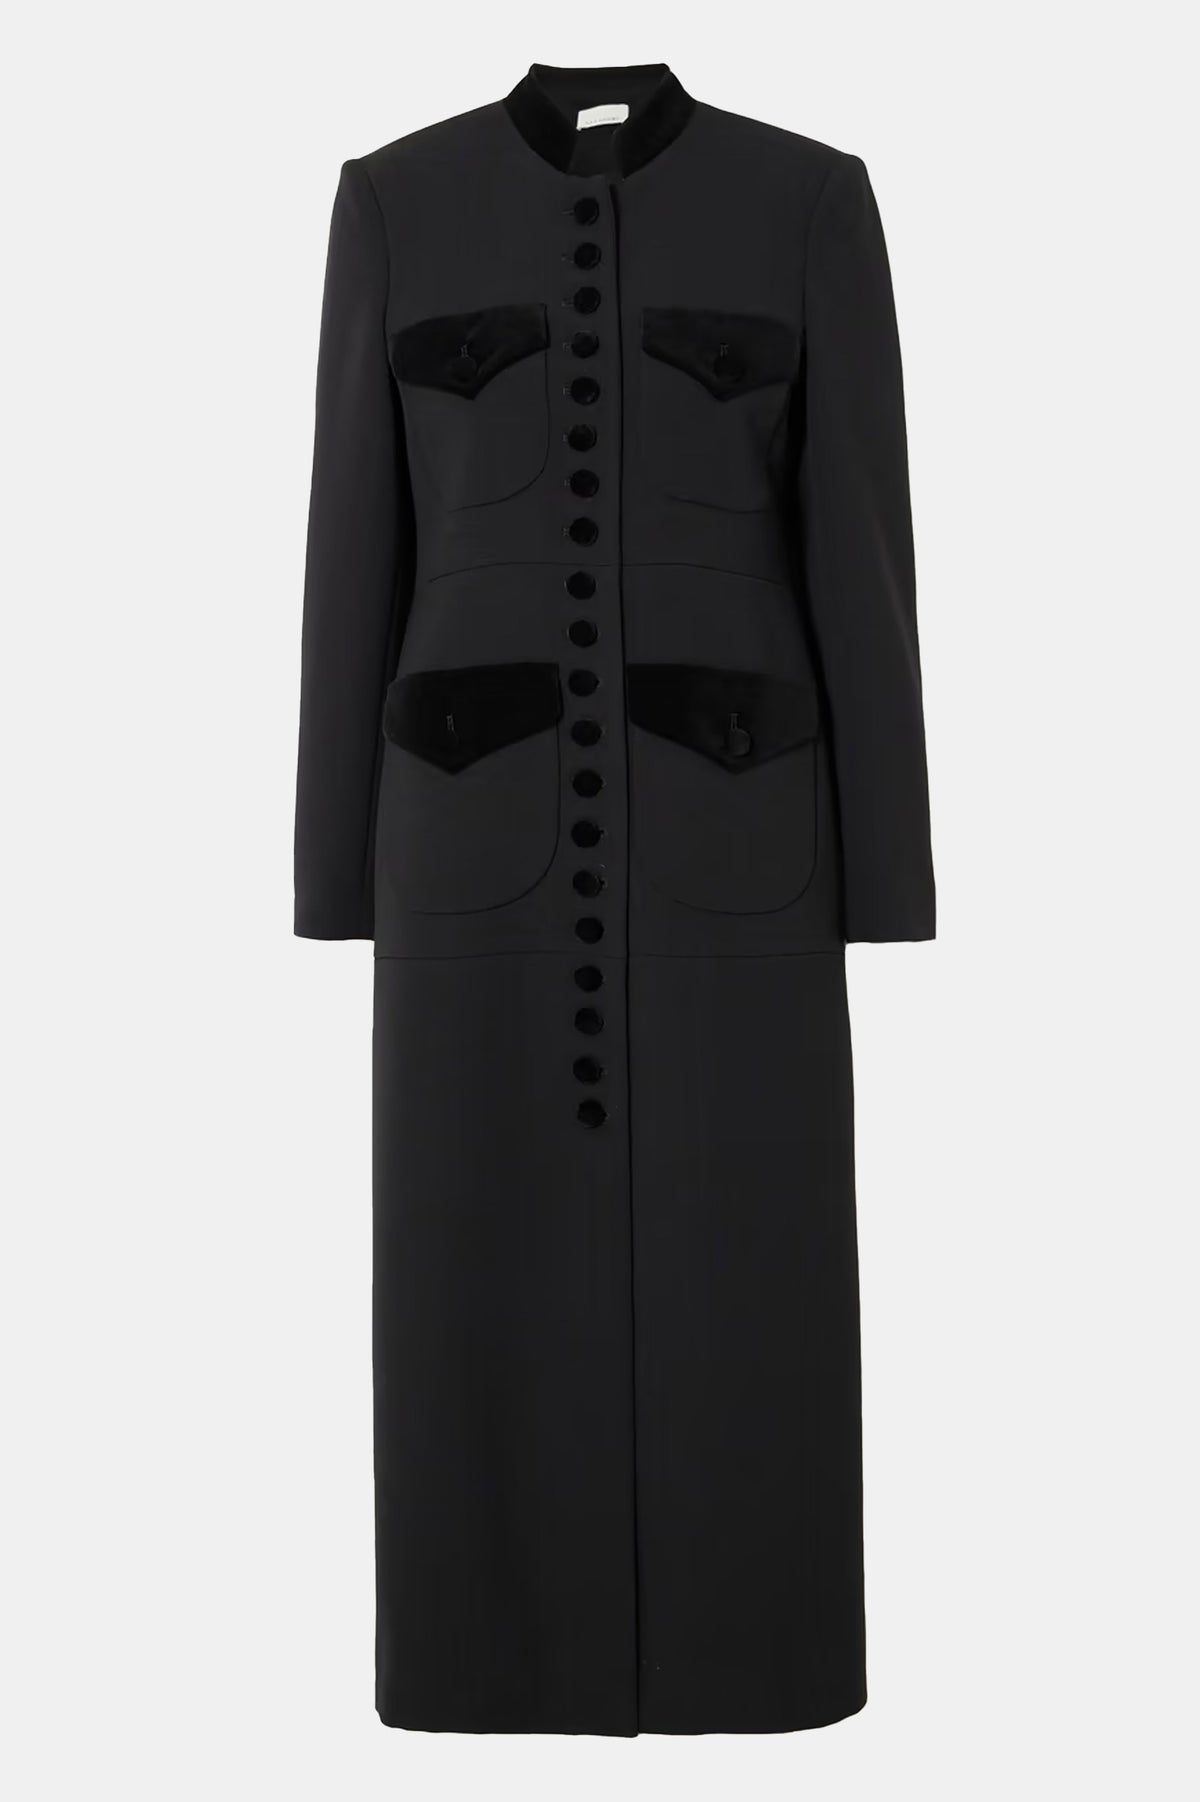 Imperial Coat in Black Wool